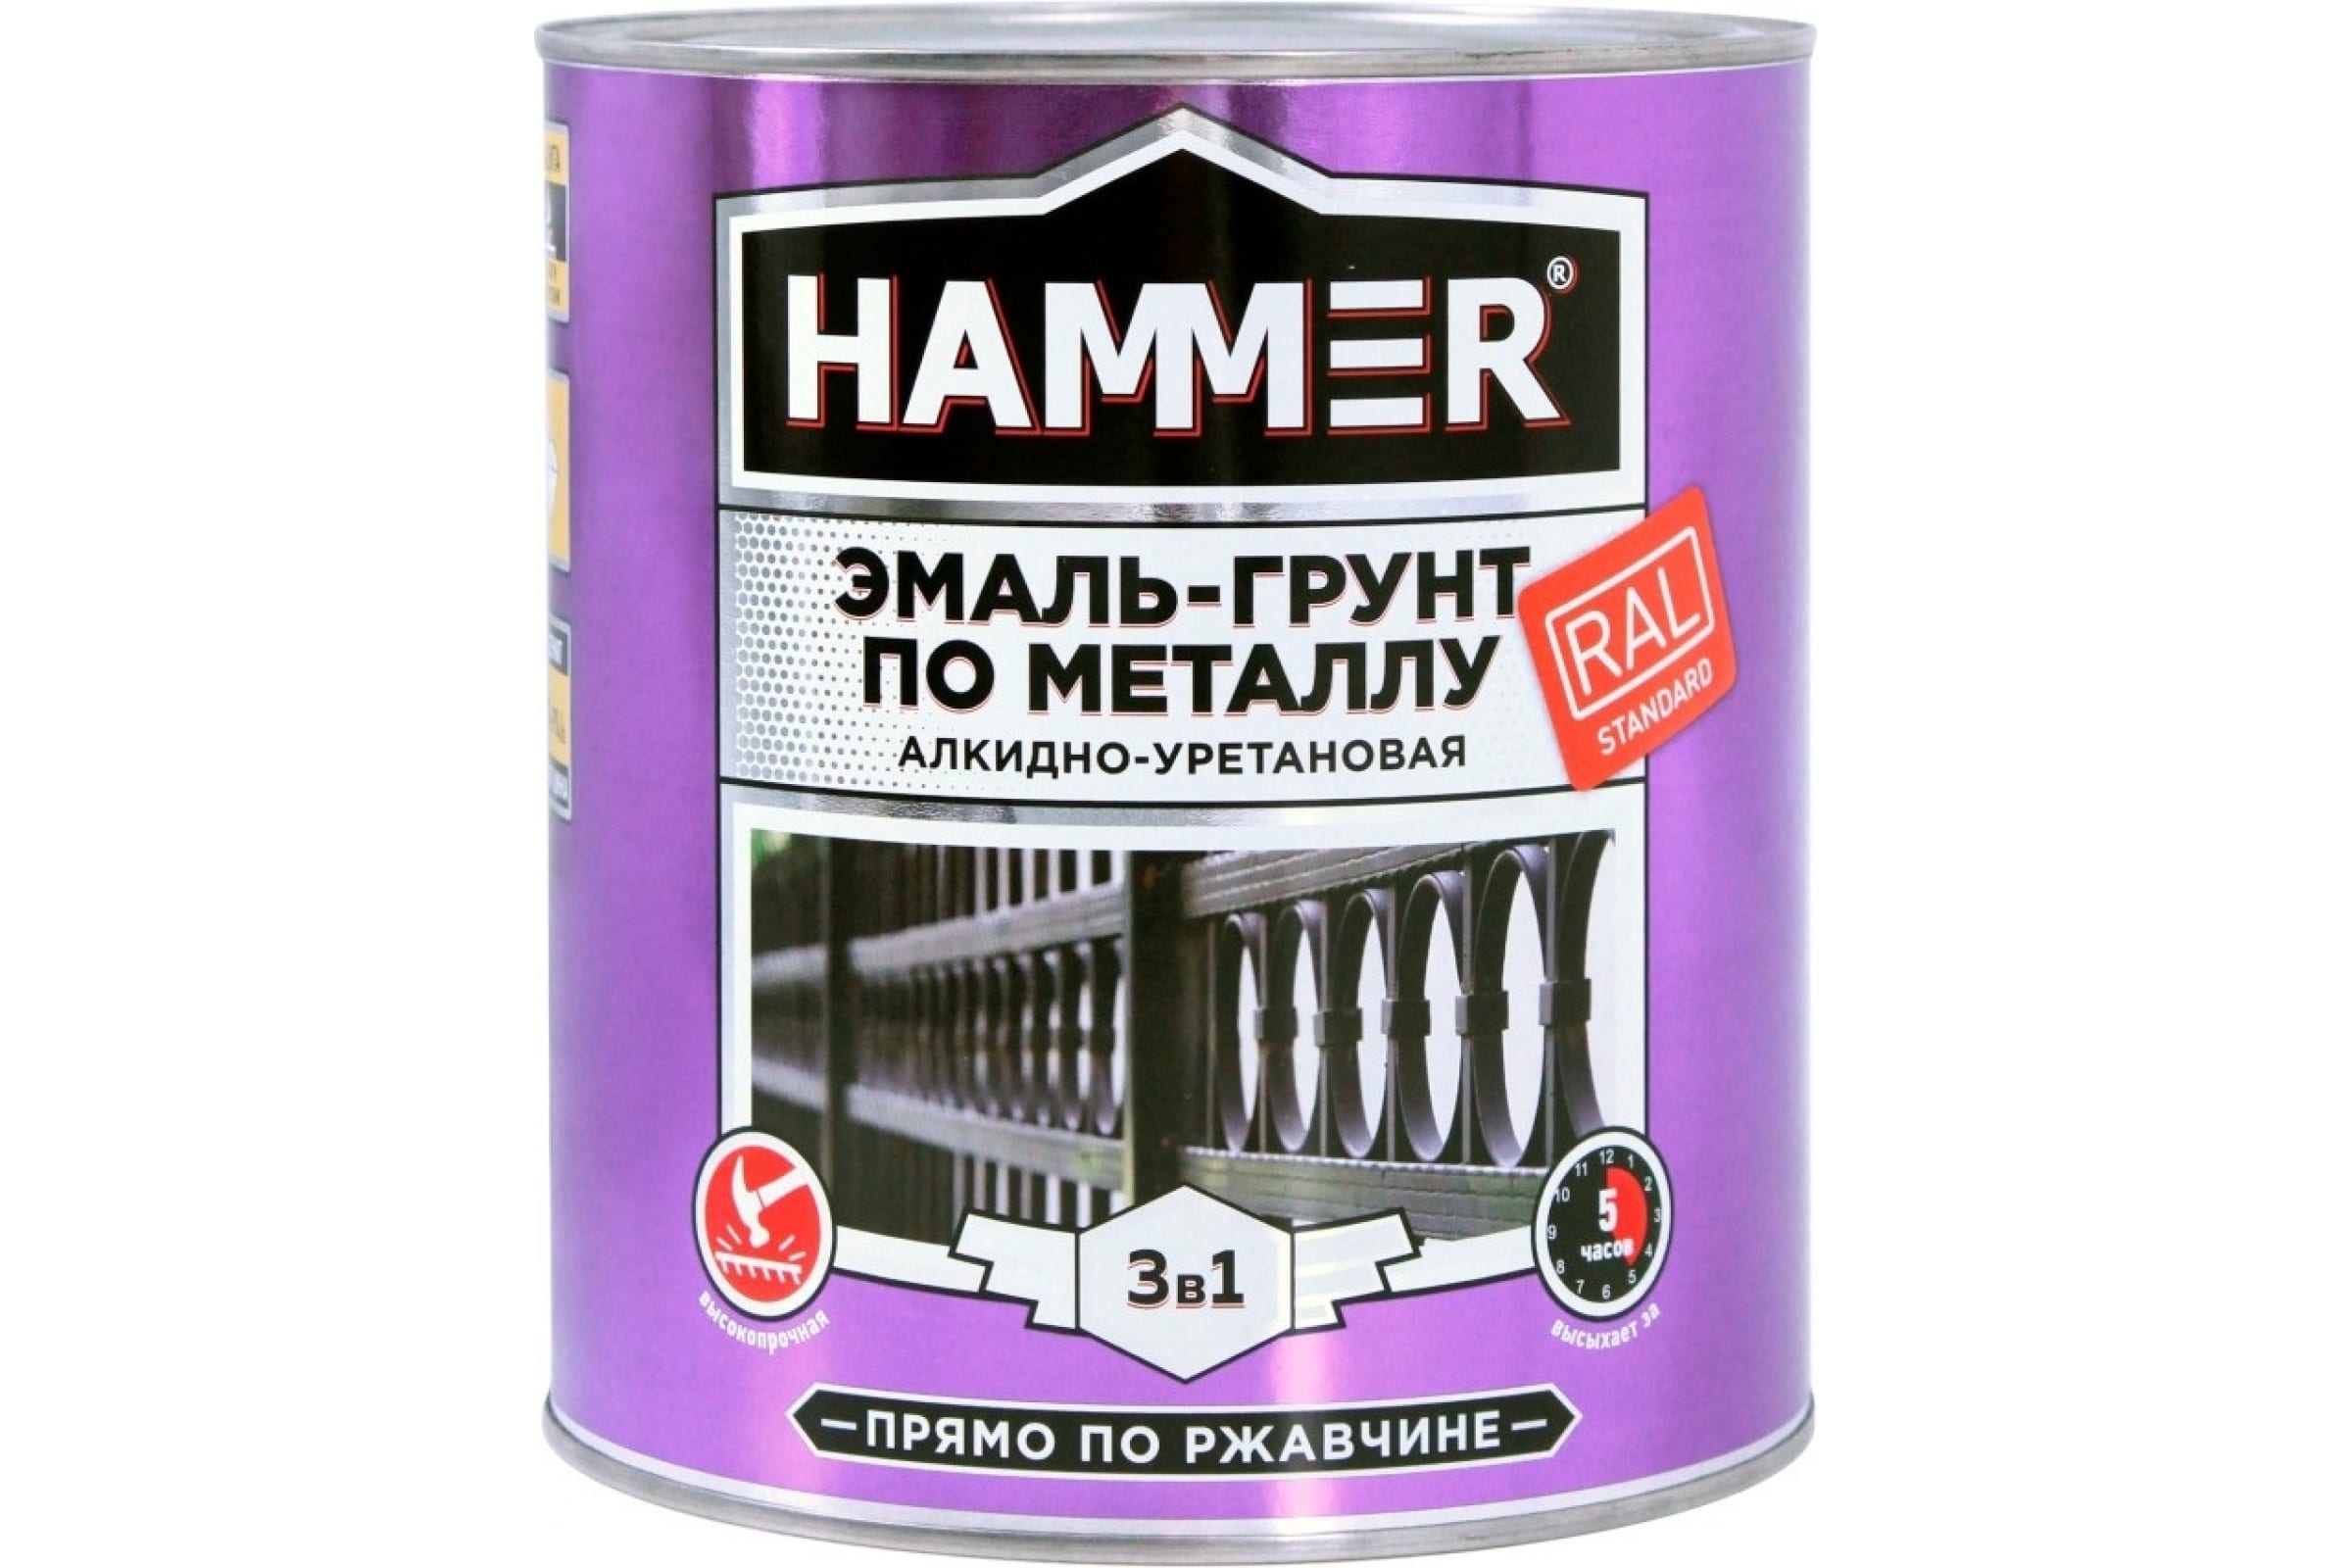 фото Hammer эмаль-грунт по металлу 3 в 1 ау п/гл ral 3005 винно-красный 2,7 кг / 4 эк000133636